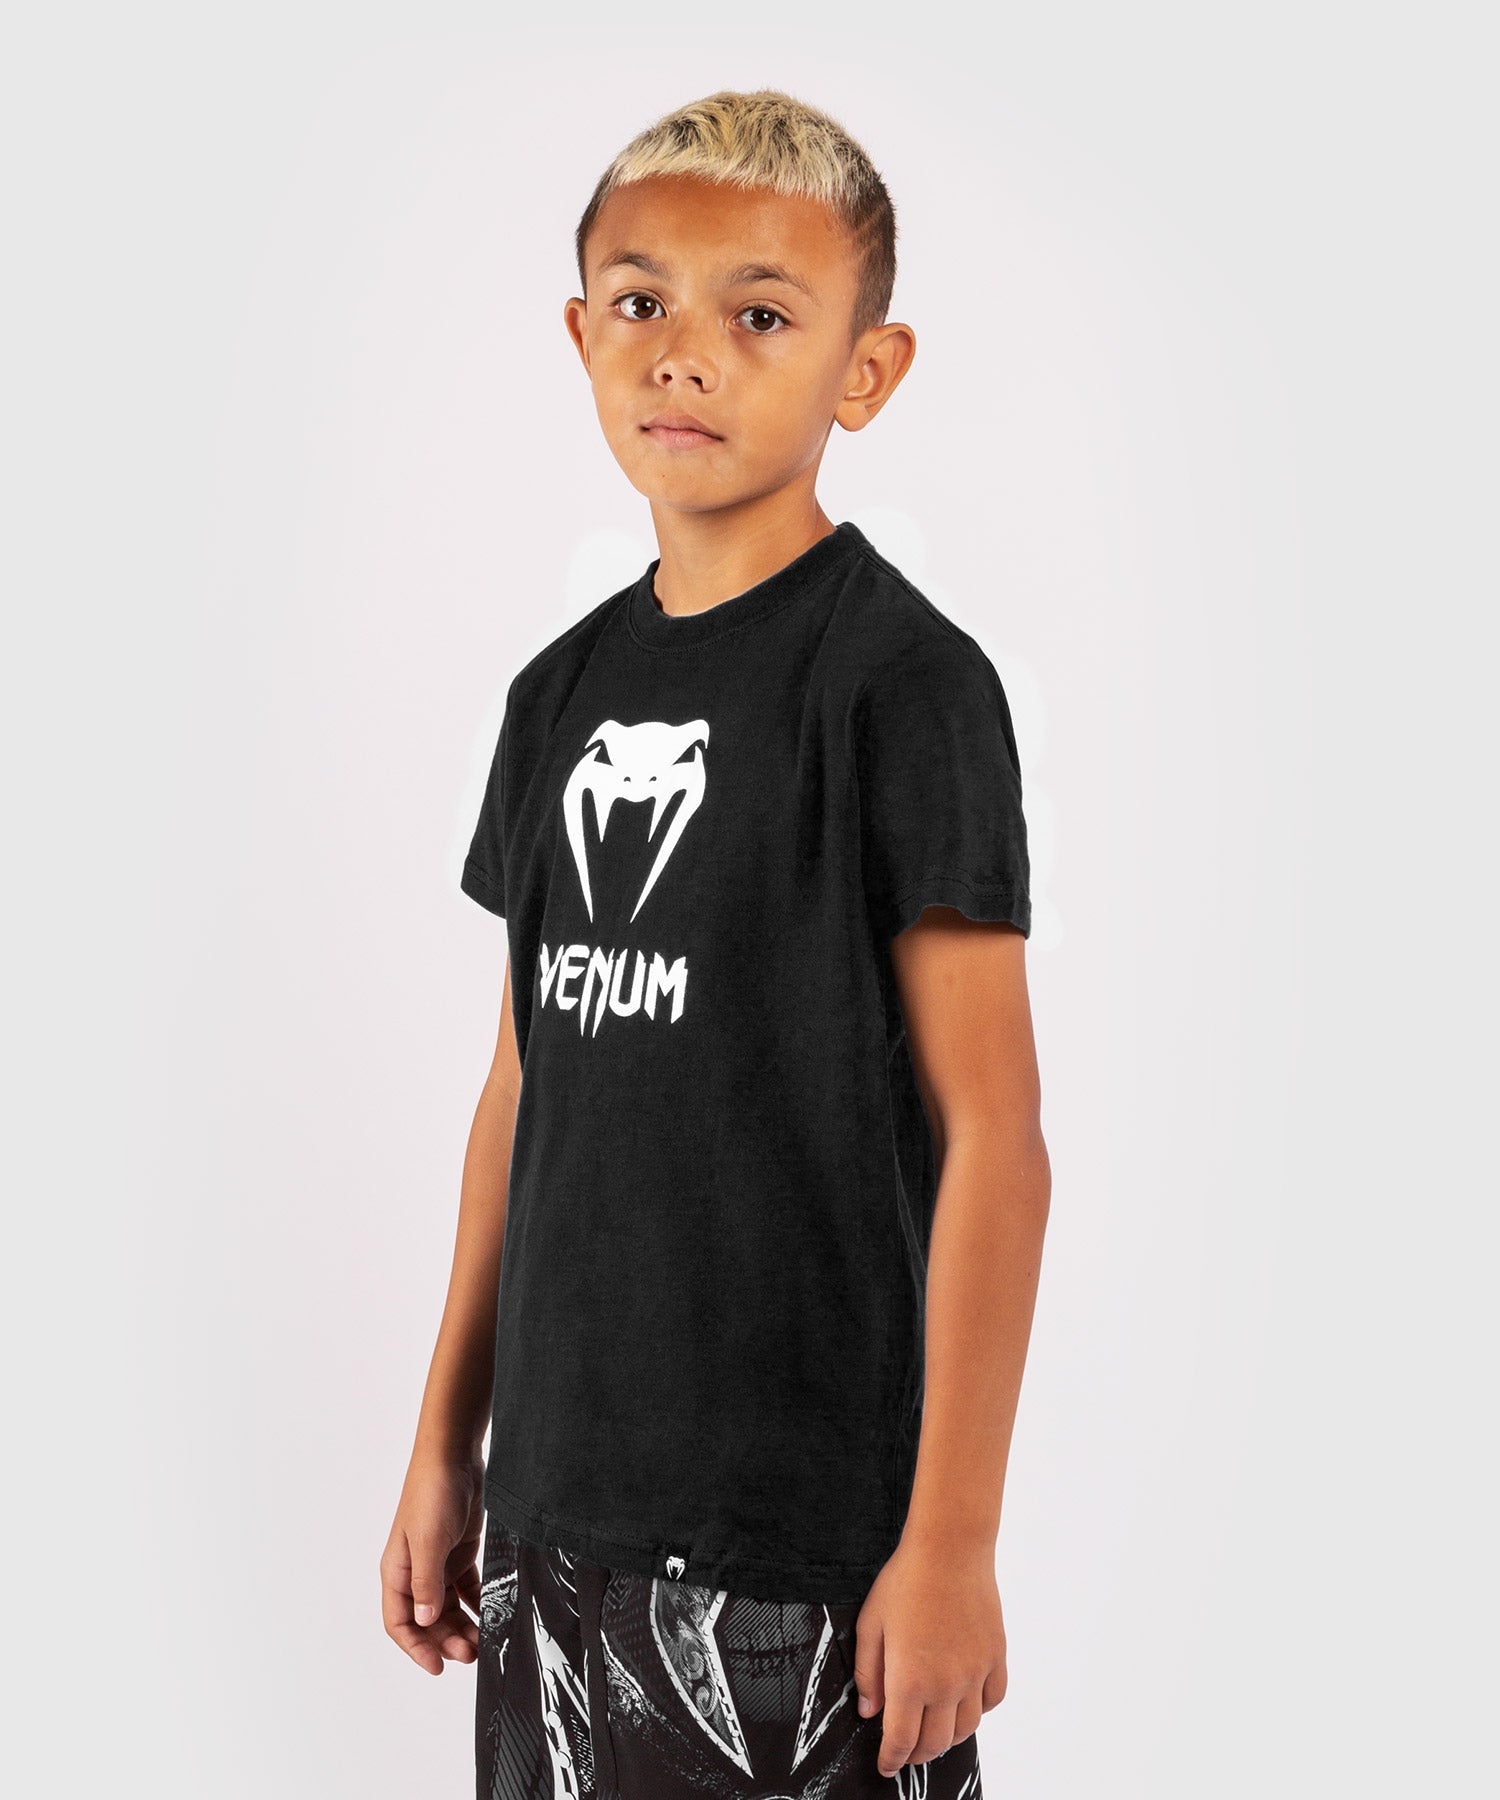 Venum Classic T-shirt - Kids - Black - Venum Asia